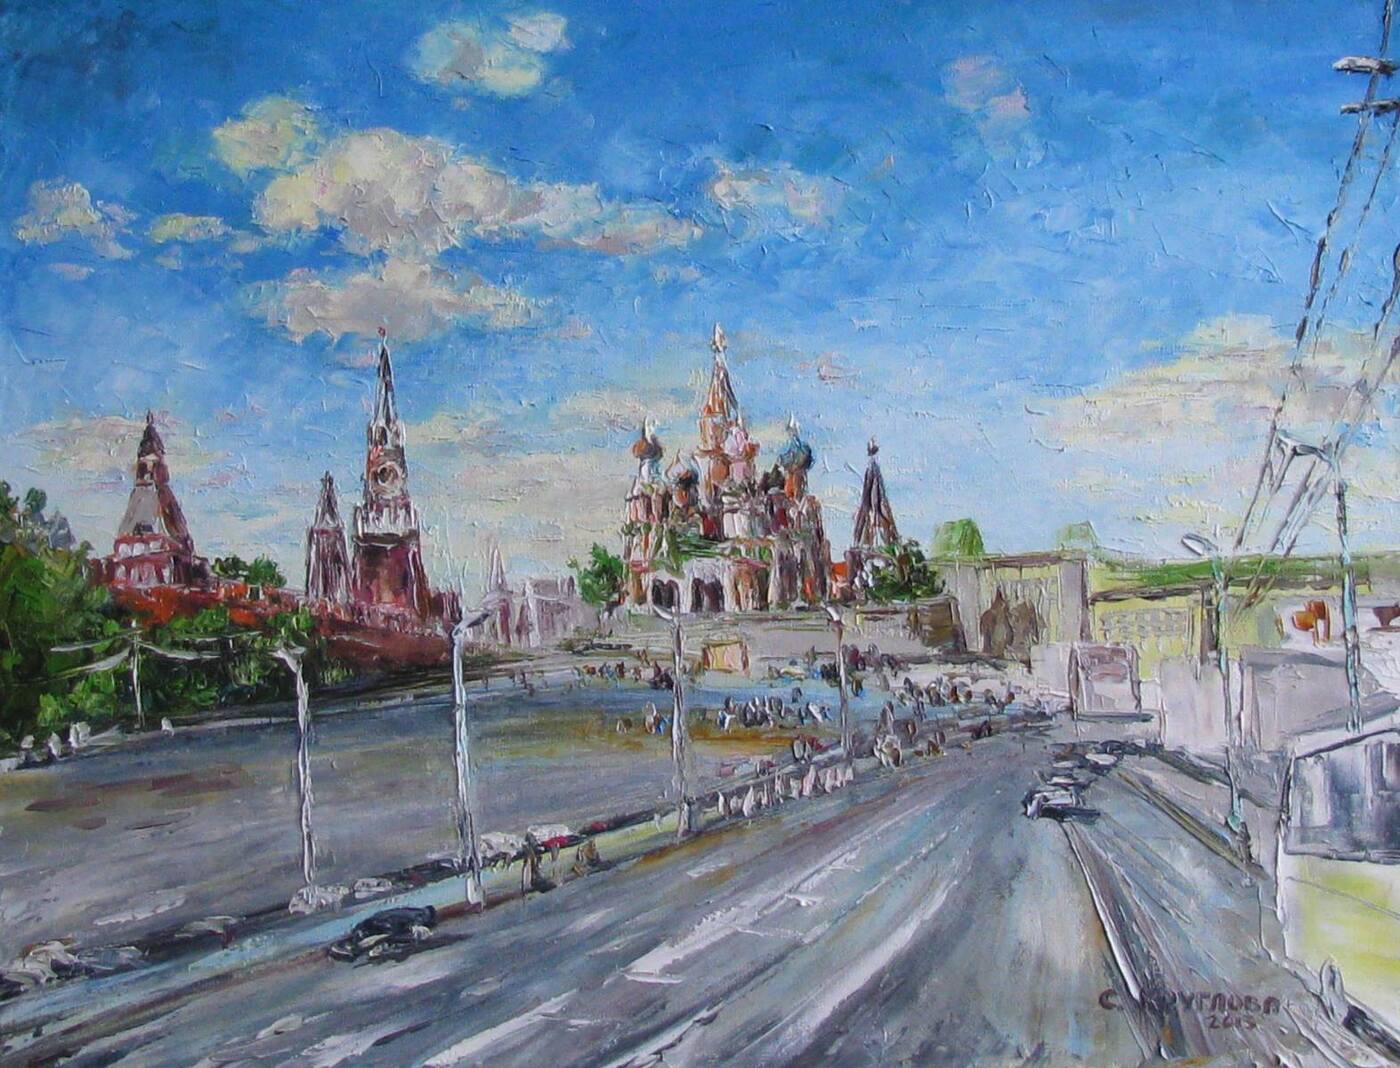 Где Купить Картину В Москве